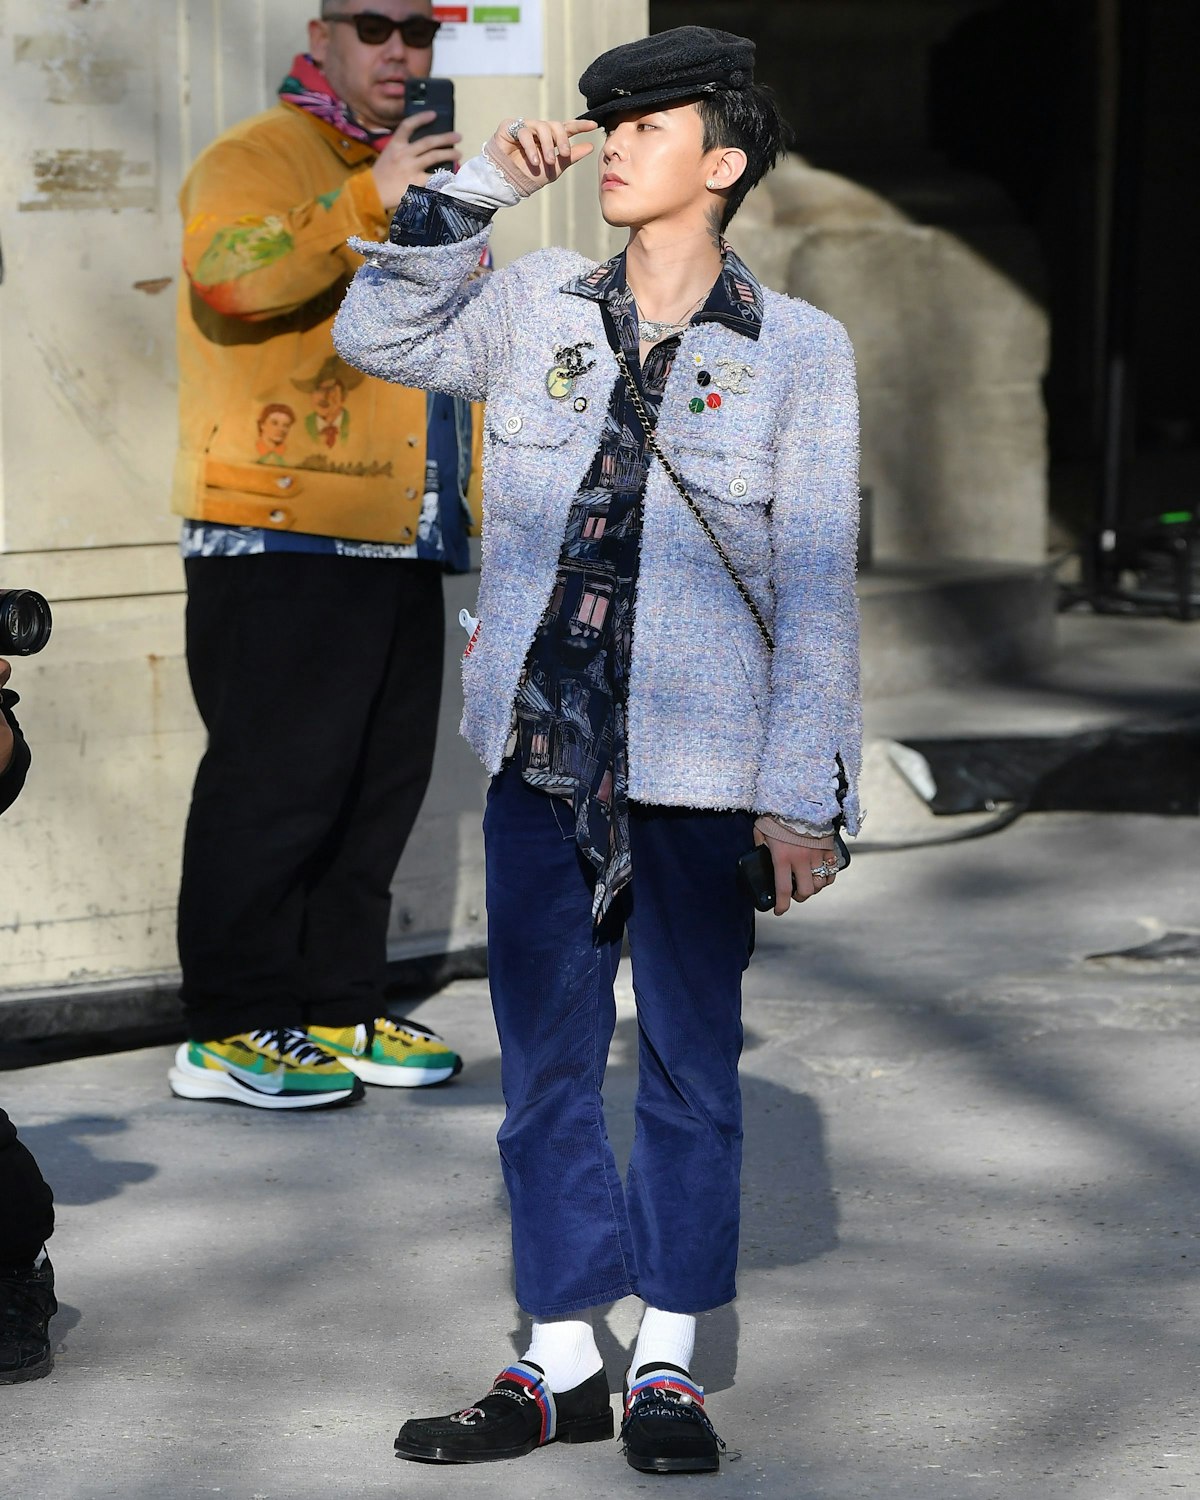 G-Dragon is the manual on X: Timeless fashion icon. 😍 #GDRAGONtoCHANEL  #GDRAGON @IBGDRGN @CHANEL  / X